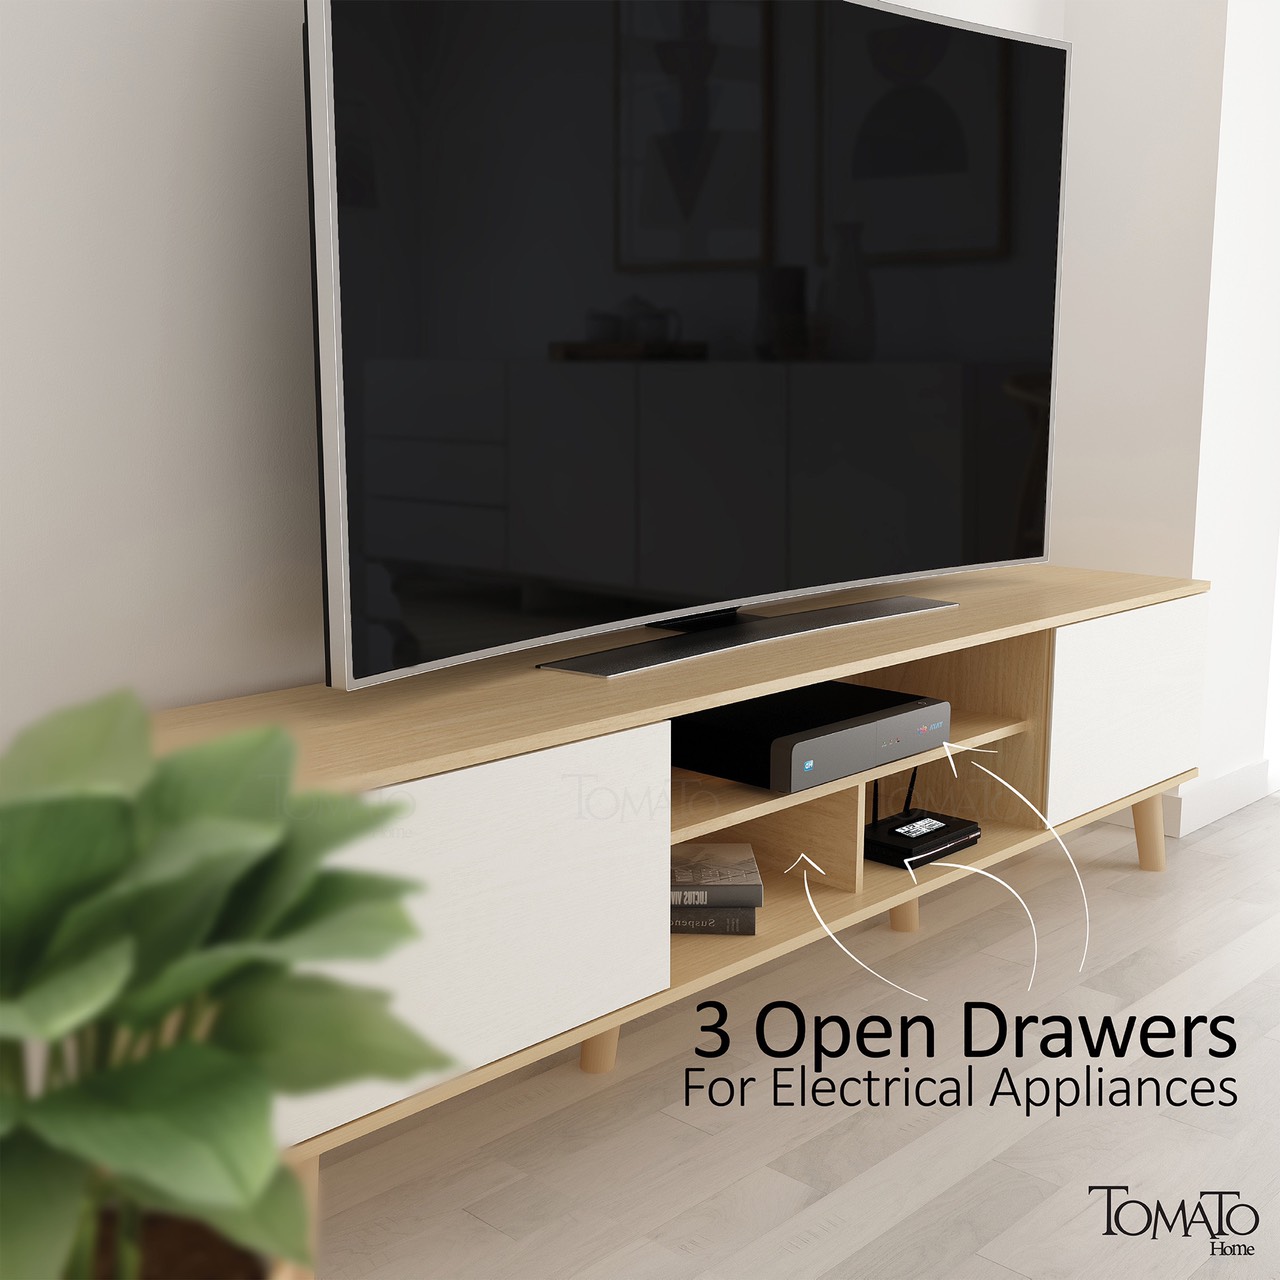 ชั้นวางทีวี 75 นิ้ว Miller TV cabinet ขนาด กว้าง180 ลึก35 สูง48.5cm สวยหรูเกินราคา เก็บและวางของได้เยอะ มีช่องเก็บของ 5 ช่อง Modern design คุณภาพส่งออกยุโรป